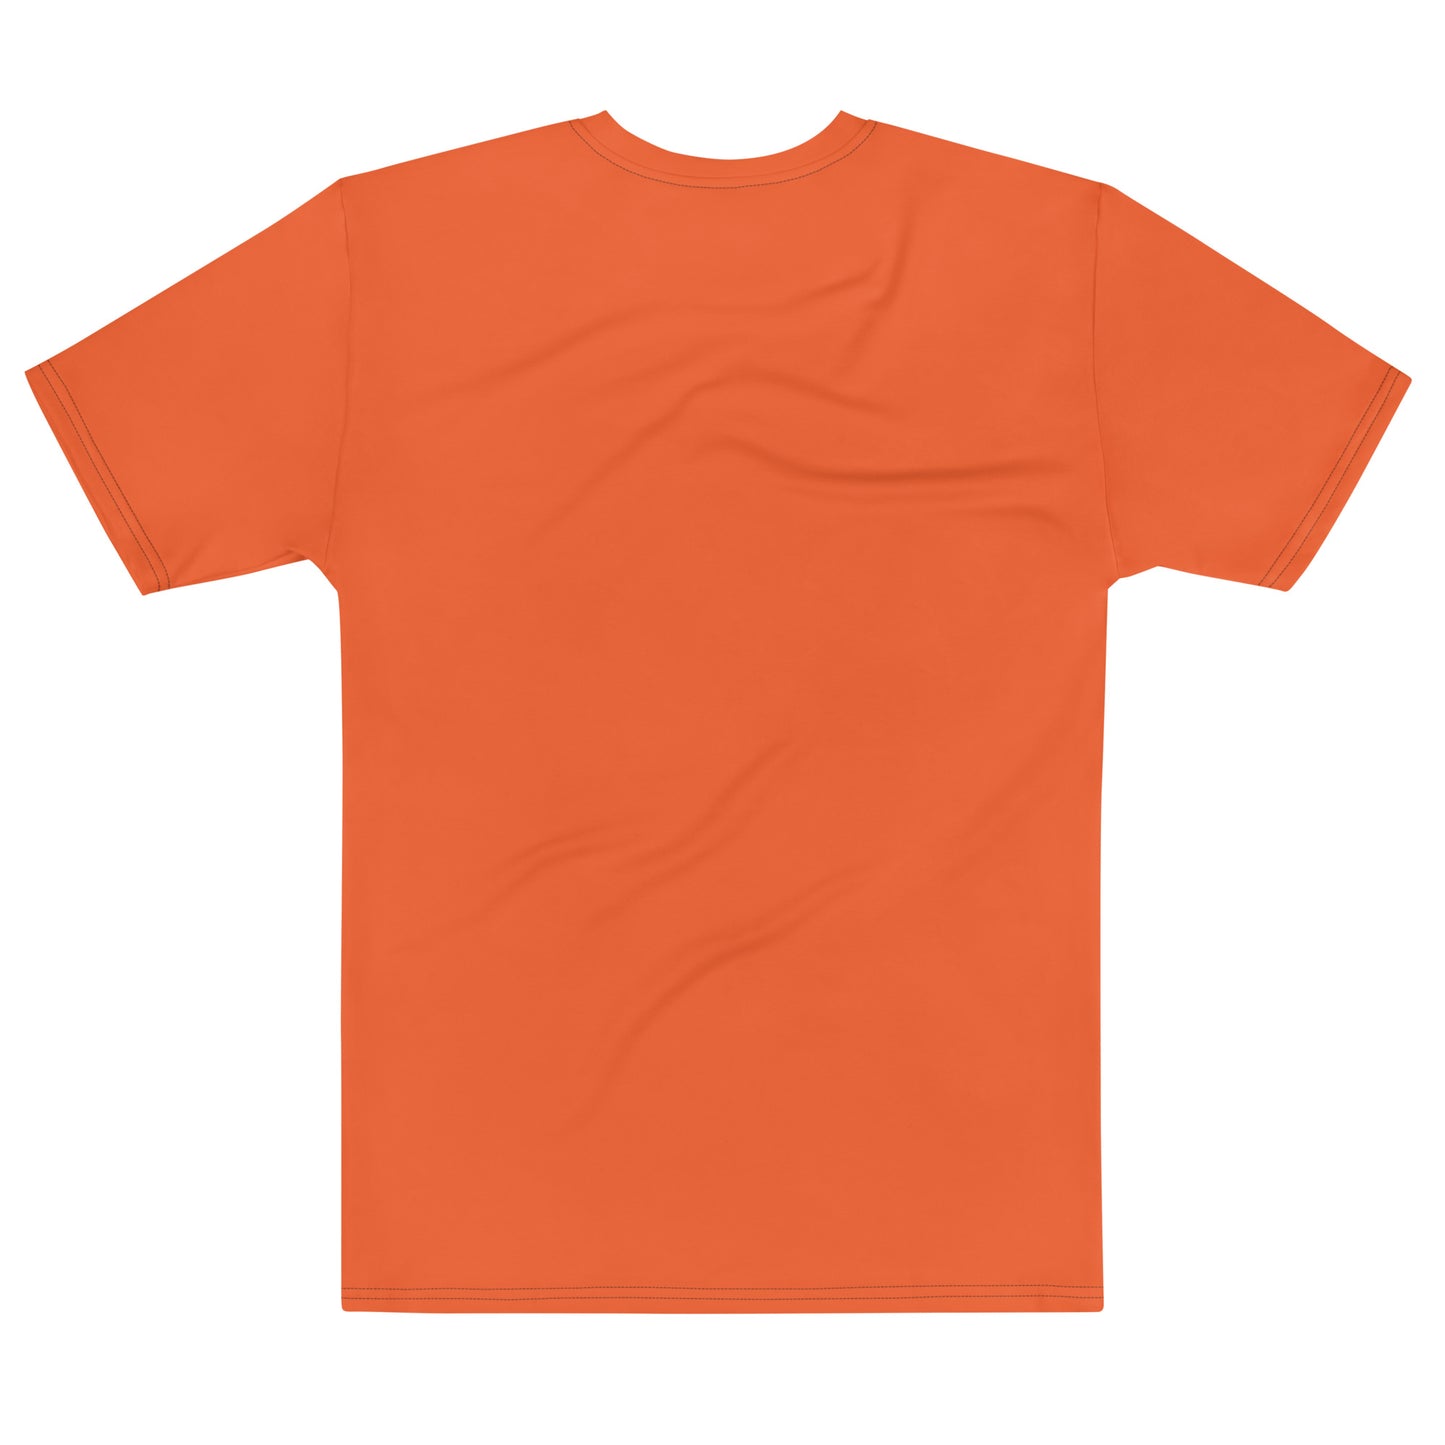 Basic Orange - Sustainably Made Men's Short Sleeve Tee